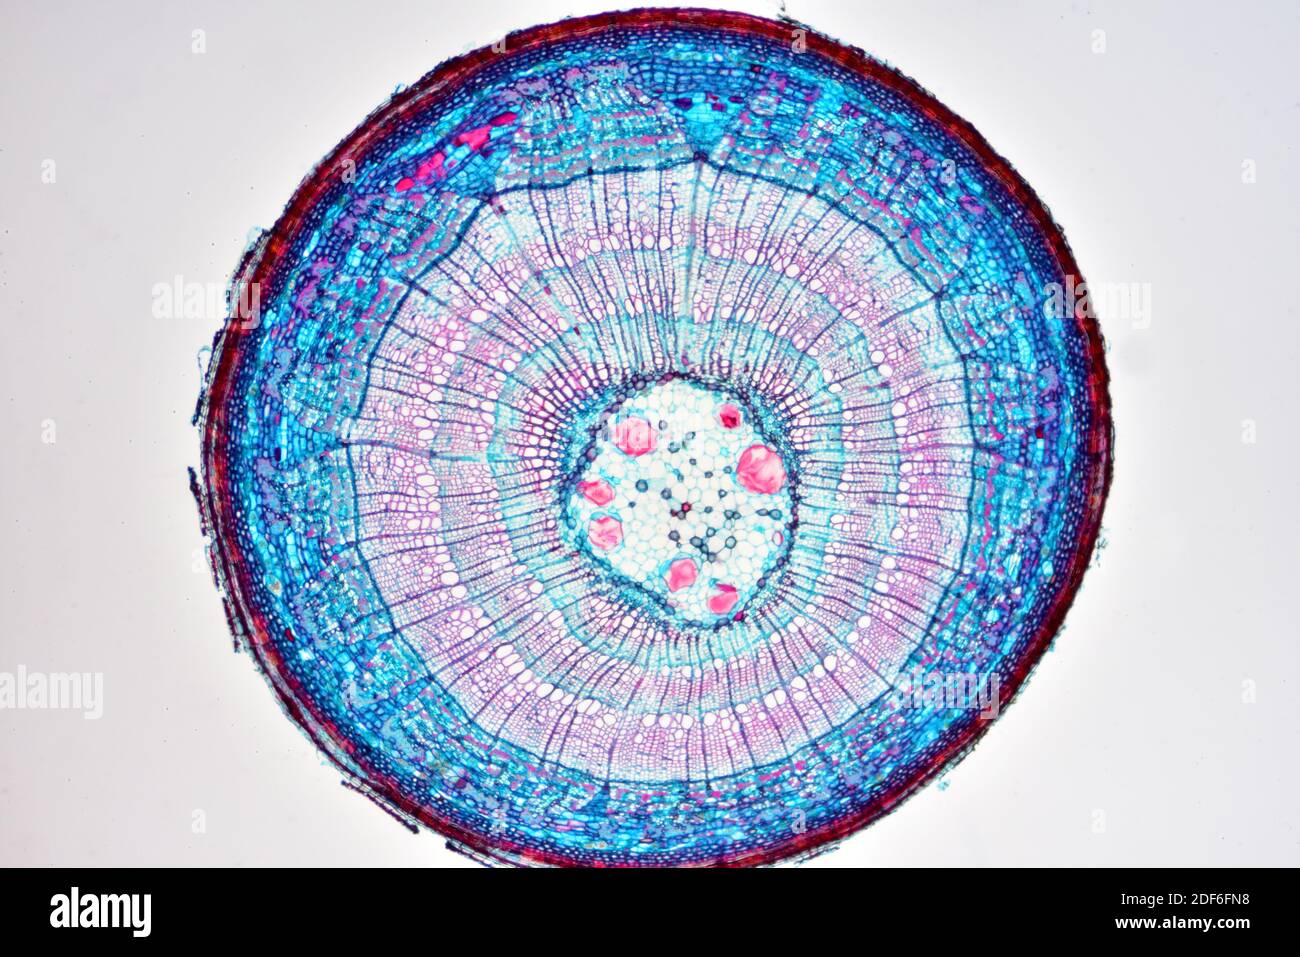 Eudicot-Stamm (Ranunculus sp. ) Zeigt Epidermis, Collenchym, Kortex, Parenchym, Pith, Phloem und Xylem. Optisches Mikroskop X40. Stockfoto